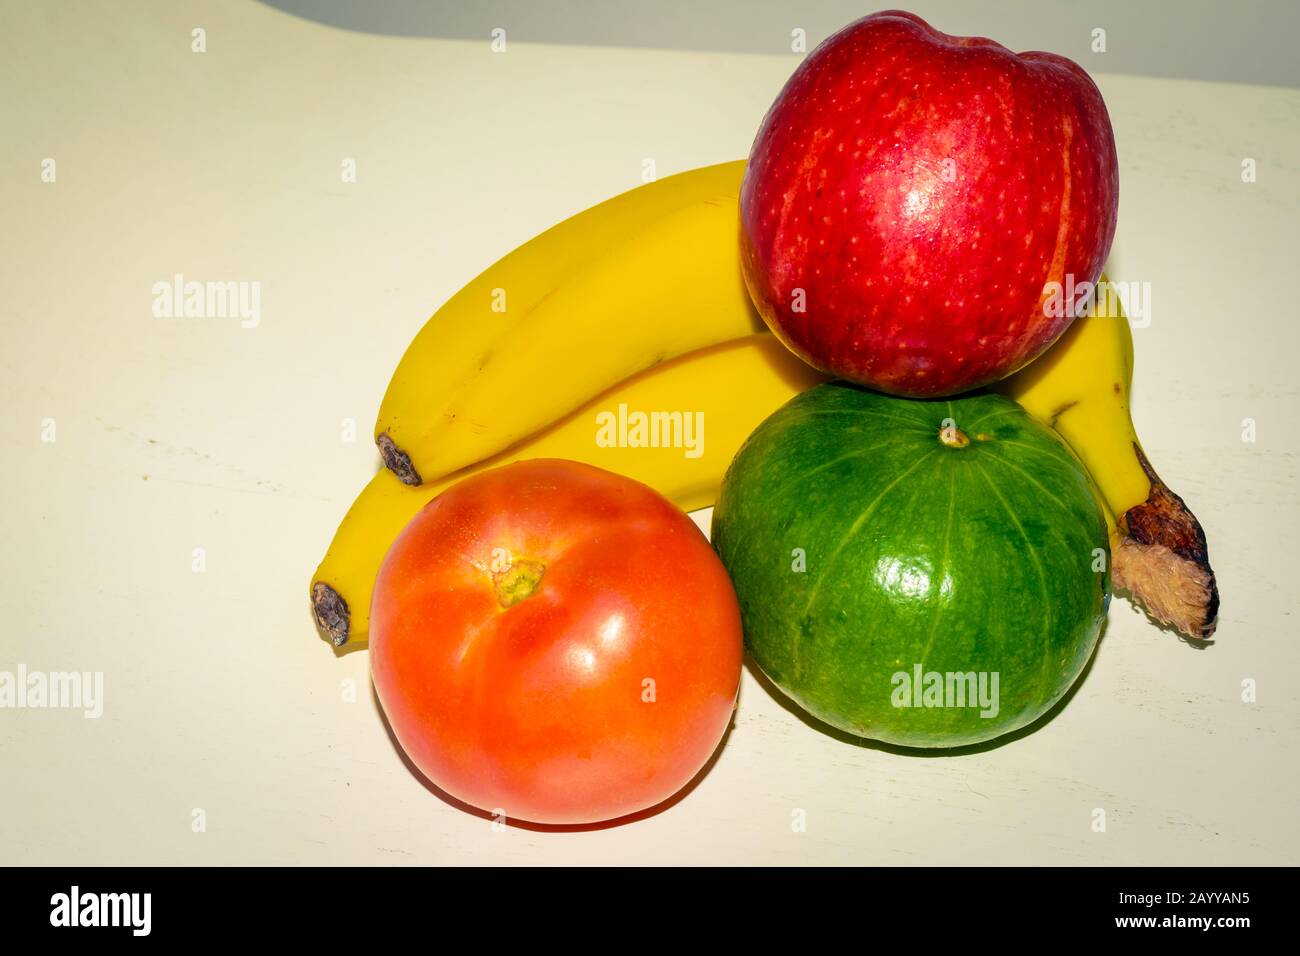 Verschiedene Obst- und Gemüsesorten. Apfel, Banane, Obstkorb. Pfeffer. Tomate Stockfoto